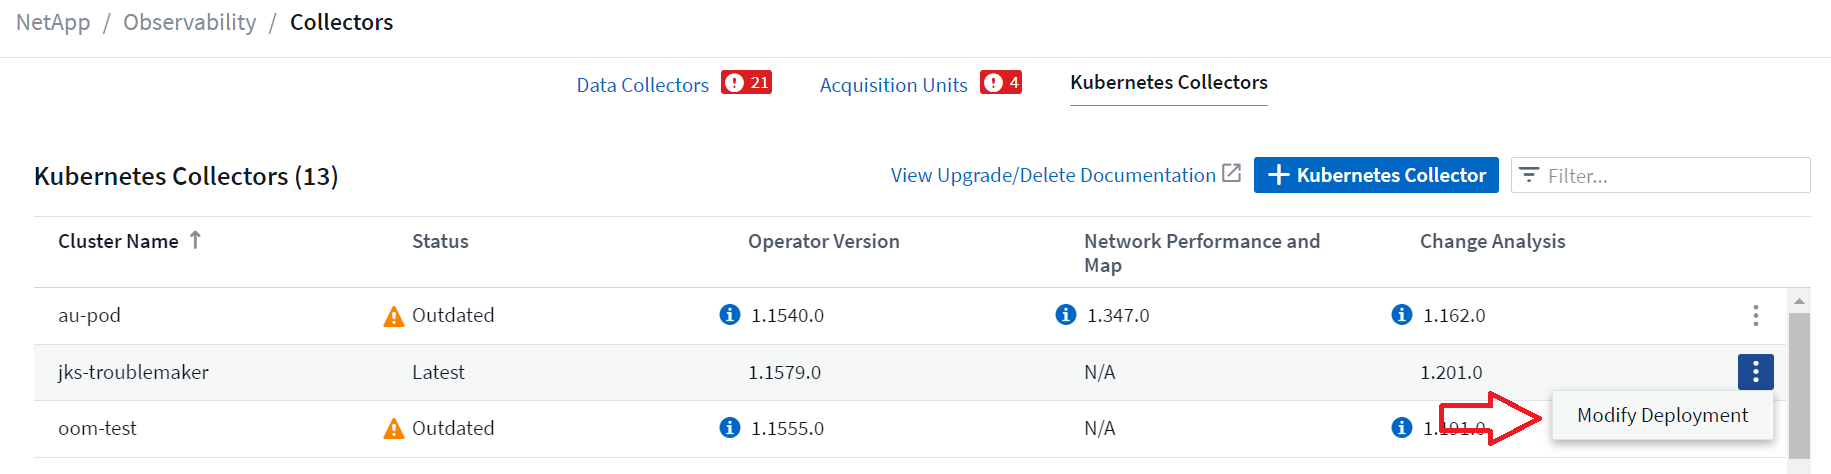 Modifier le menu de déploiement sur la page de liste du collecteur Kubernetes